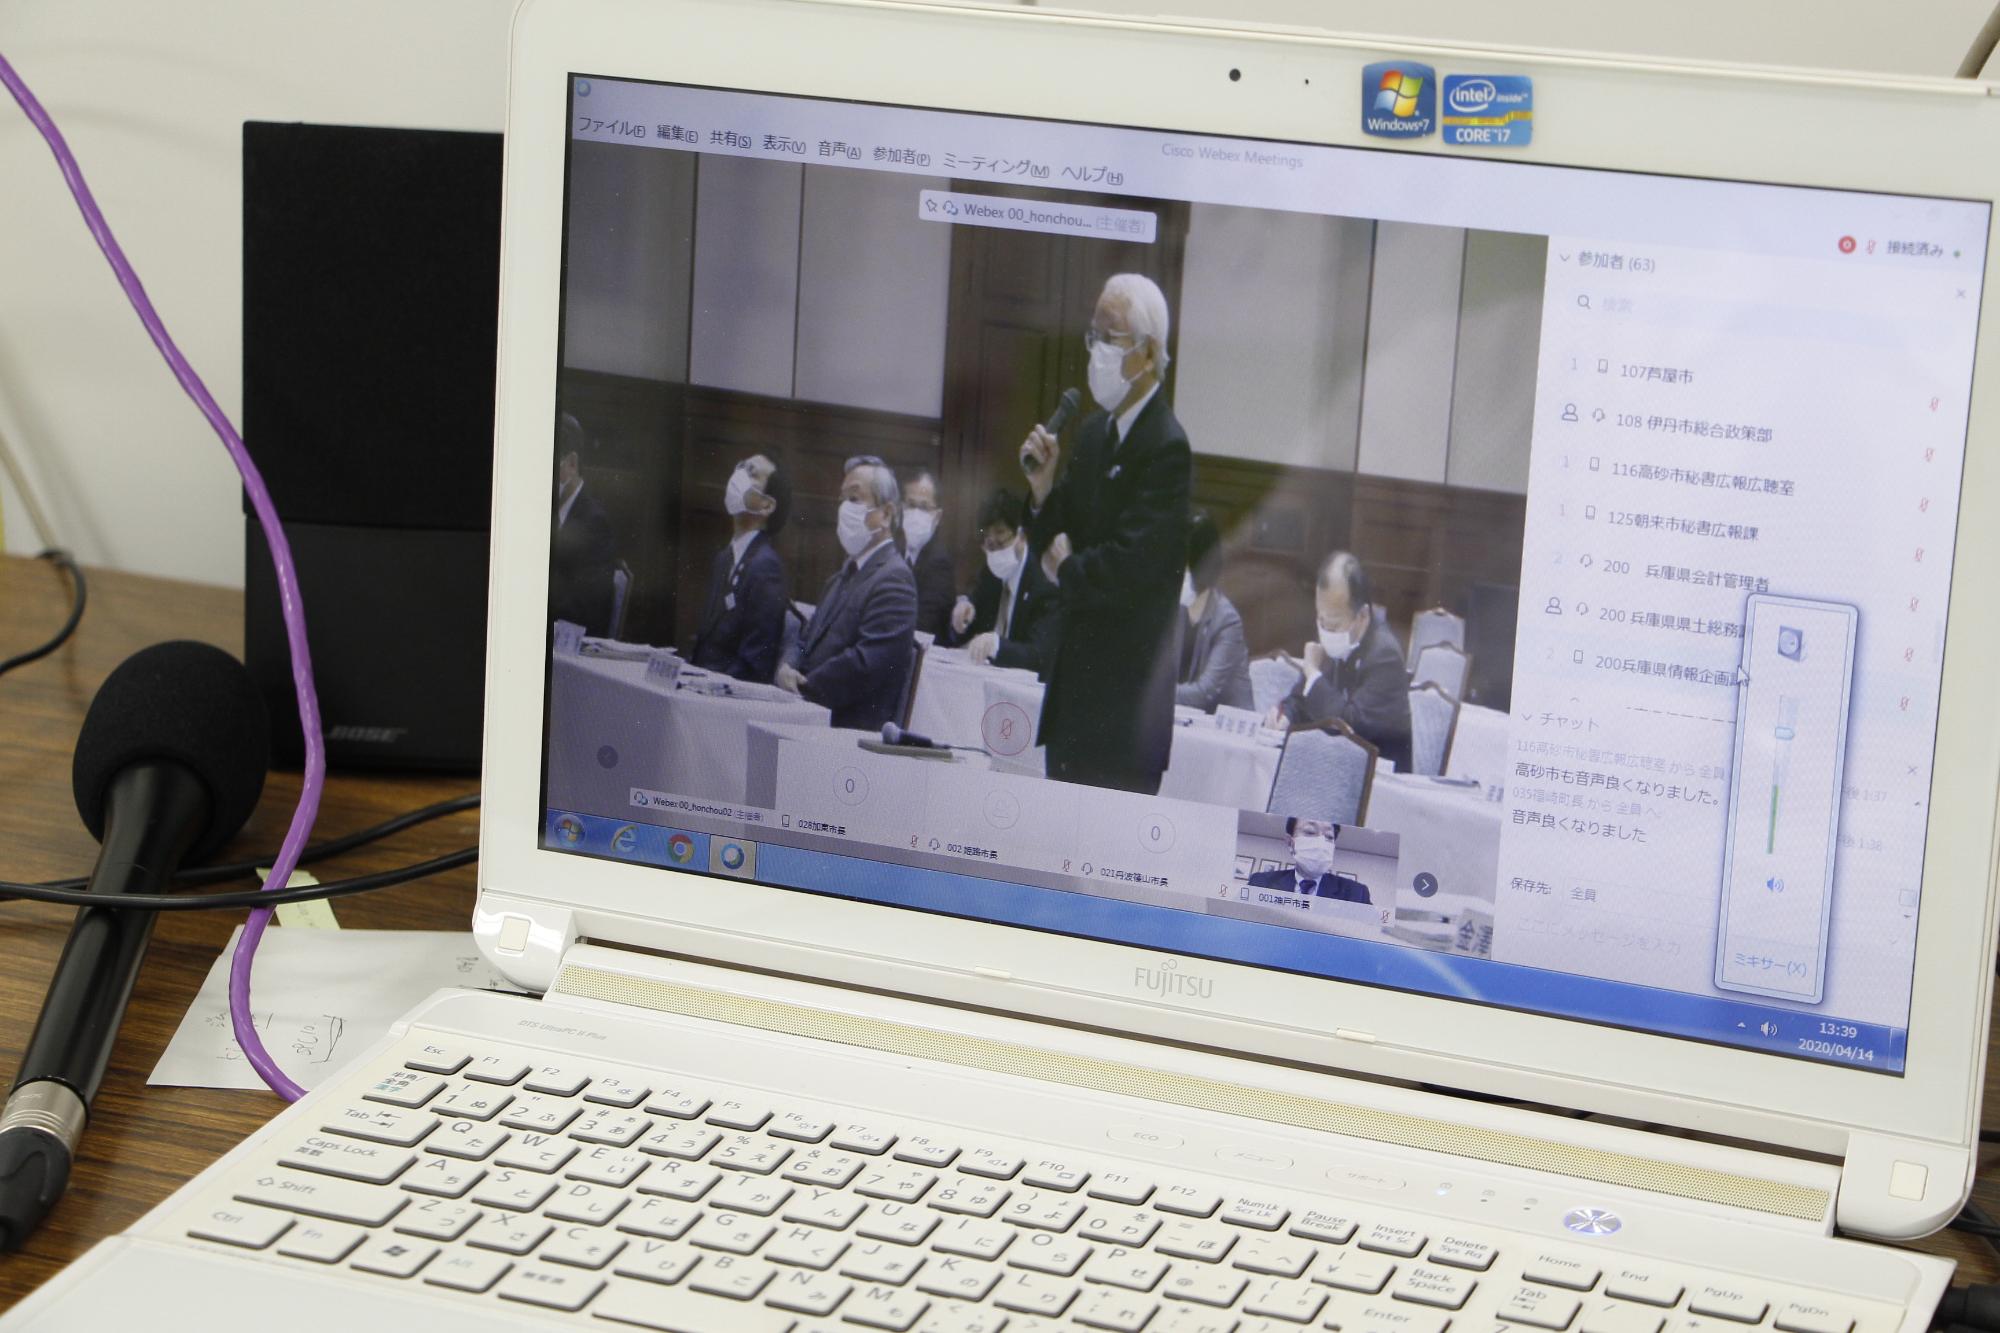 ウェブ会議でパソコン画面に映る井戸知事の写真